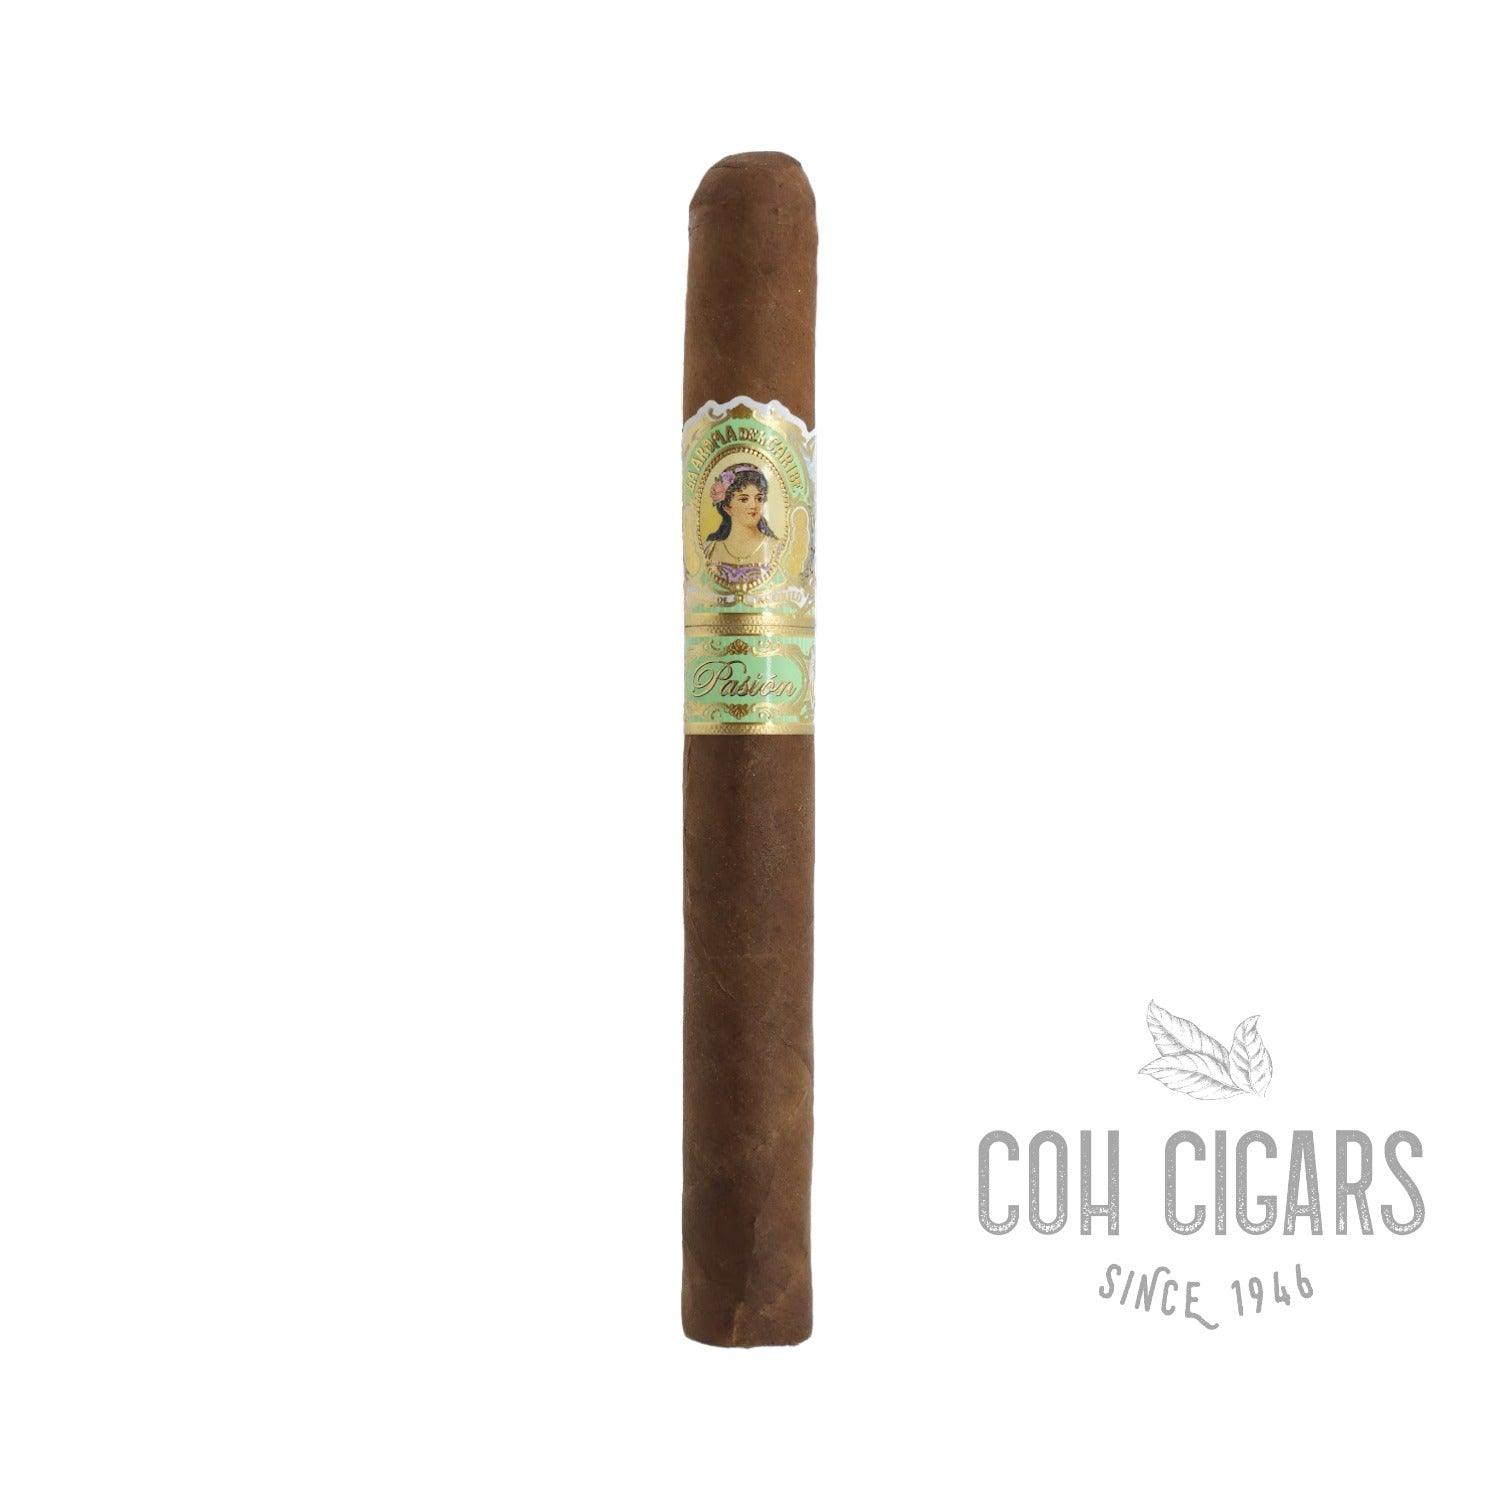 La Aroma del Caribe Cigar | Pasion Churchill | Box 25 - HK CohCigars